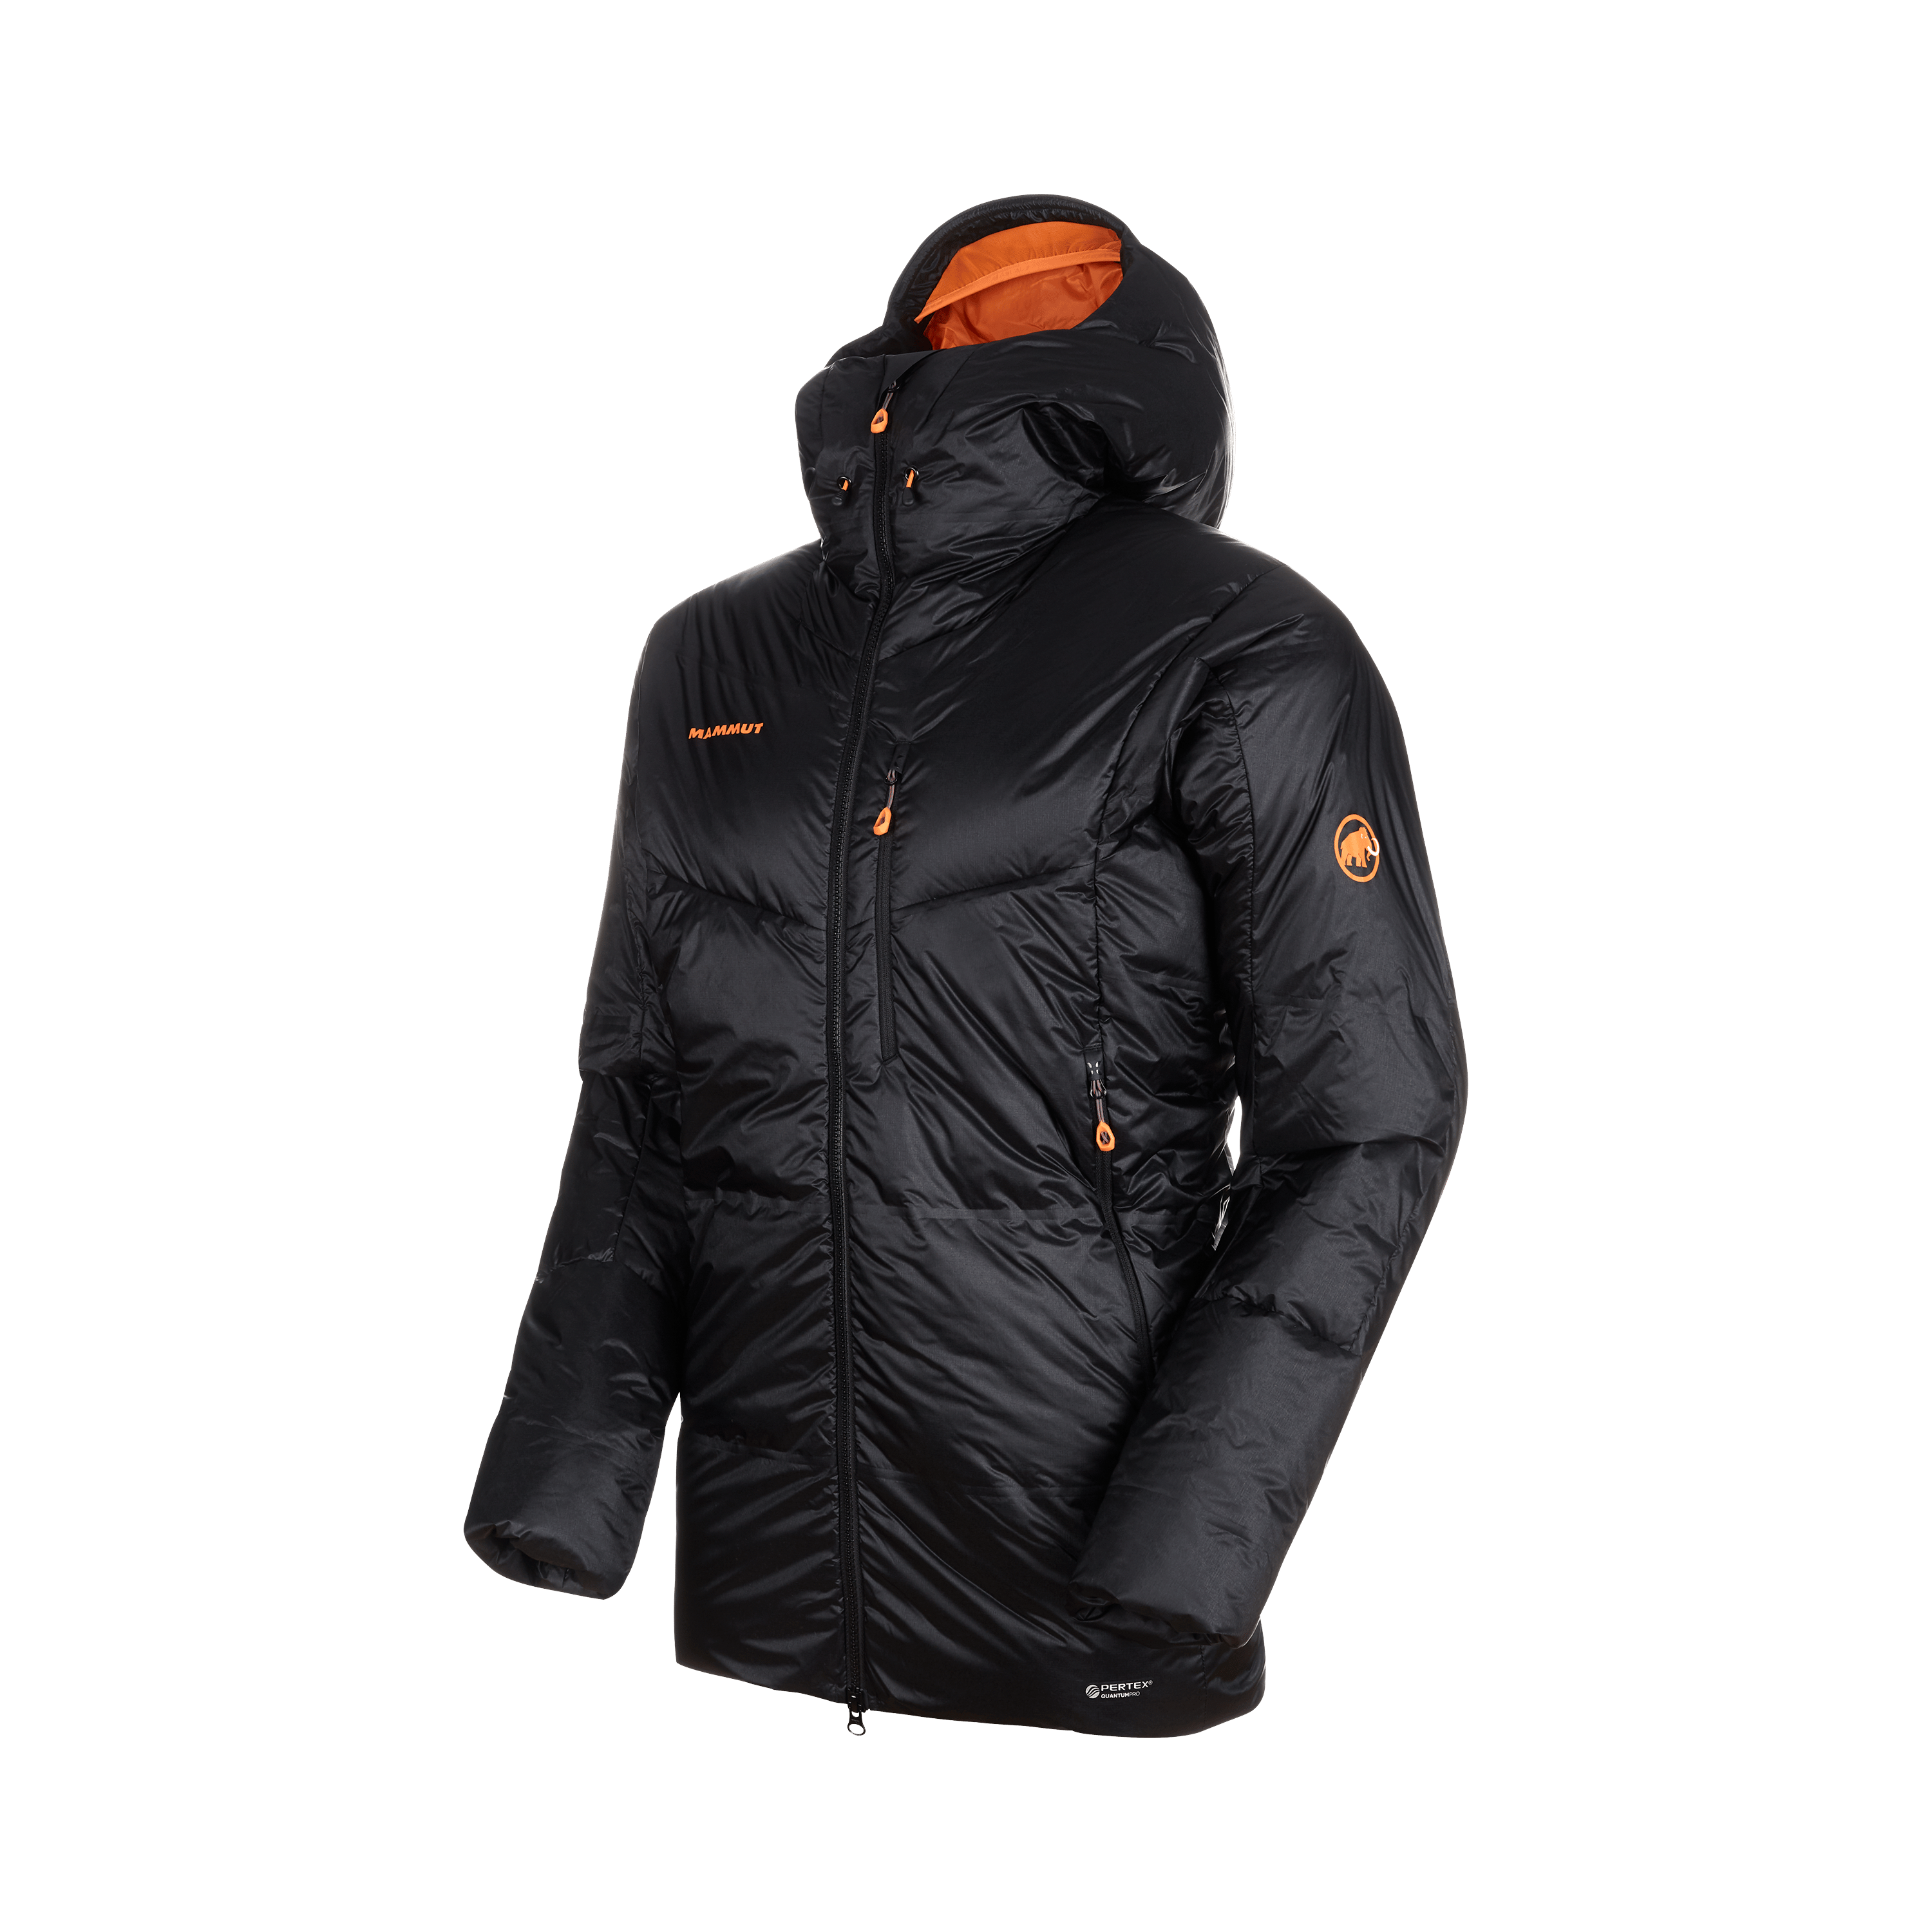 Eigerjoch Pro IN Hooded Jacket Men